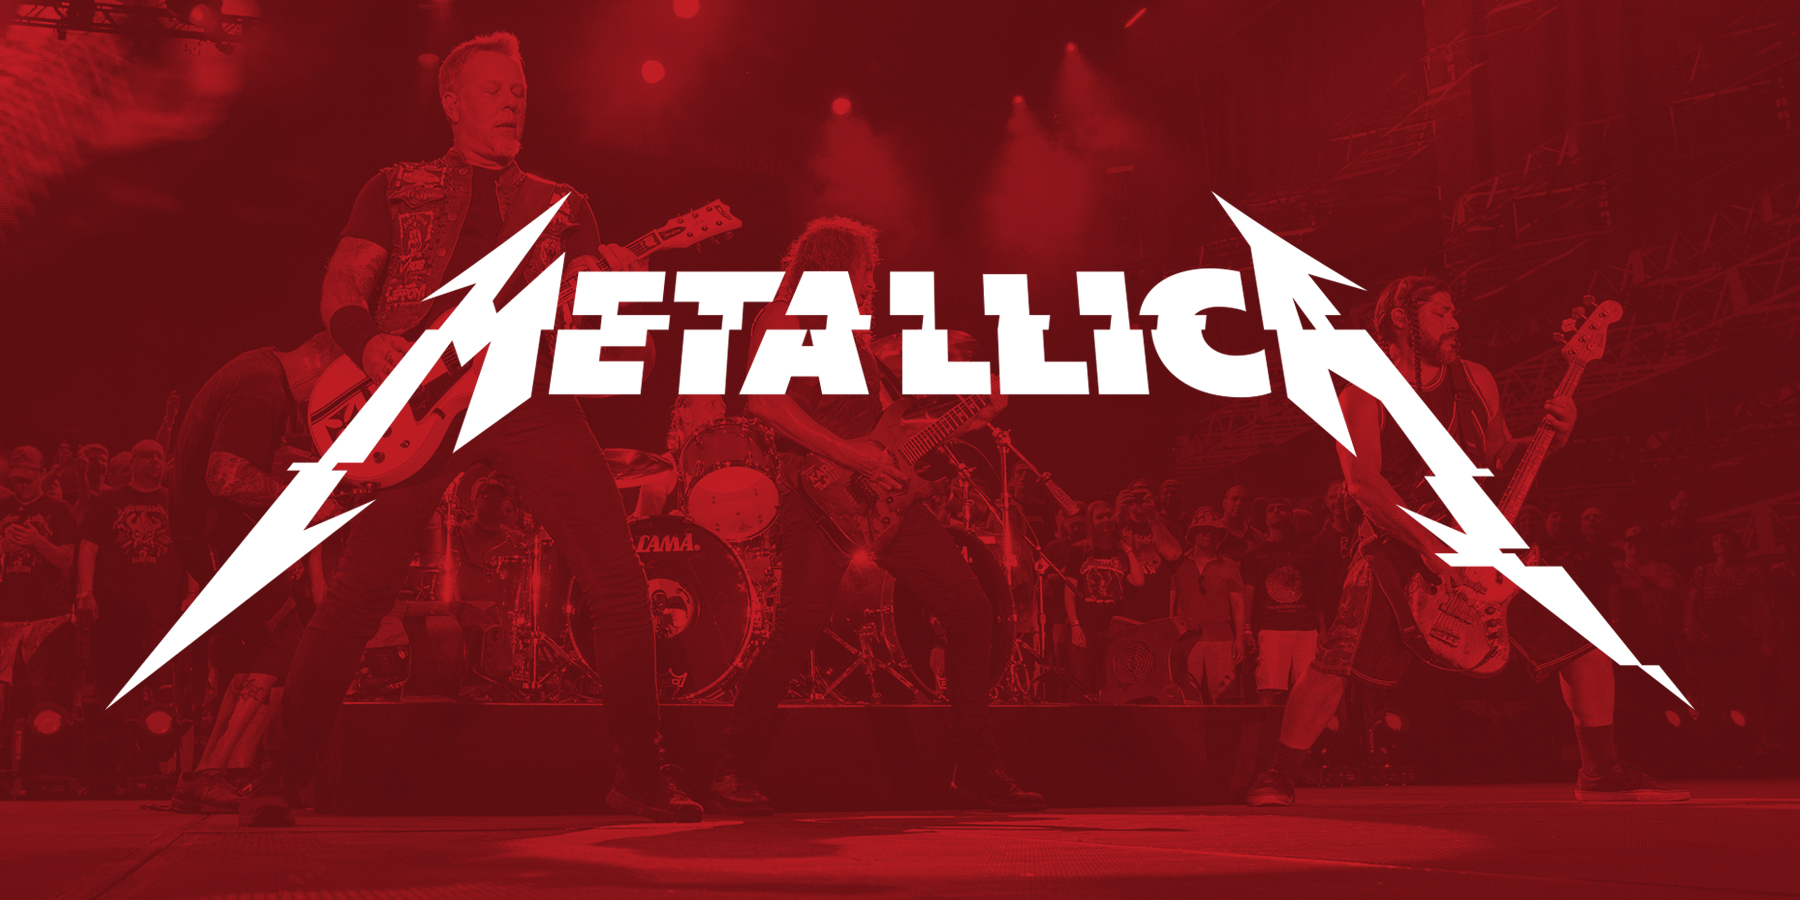 Metallica shop